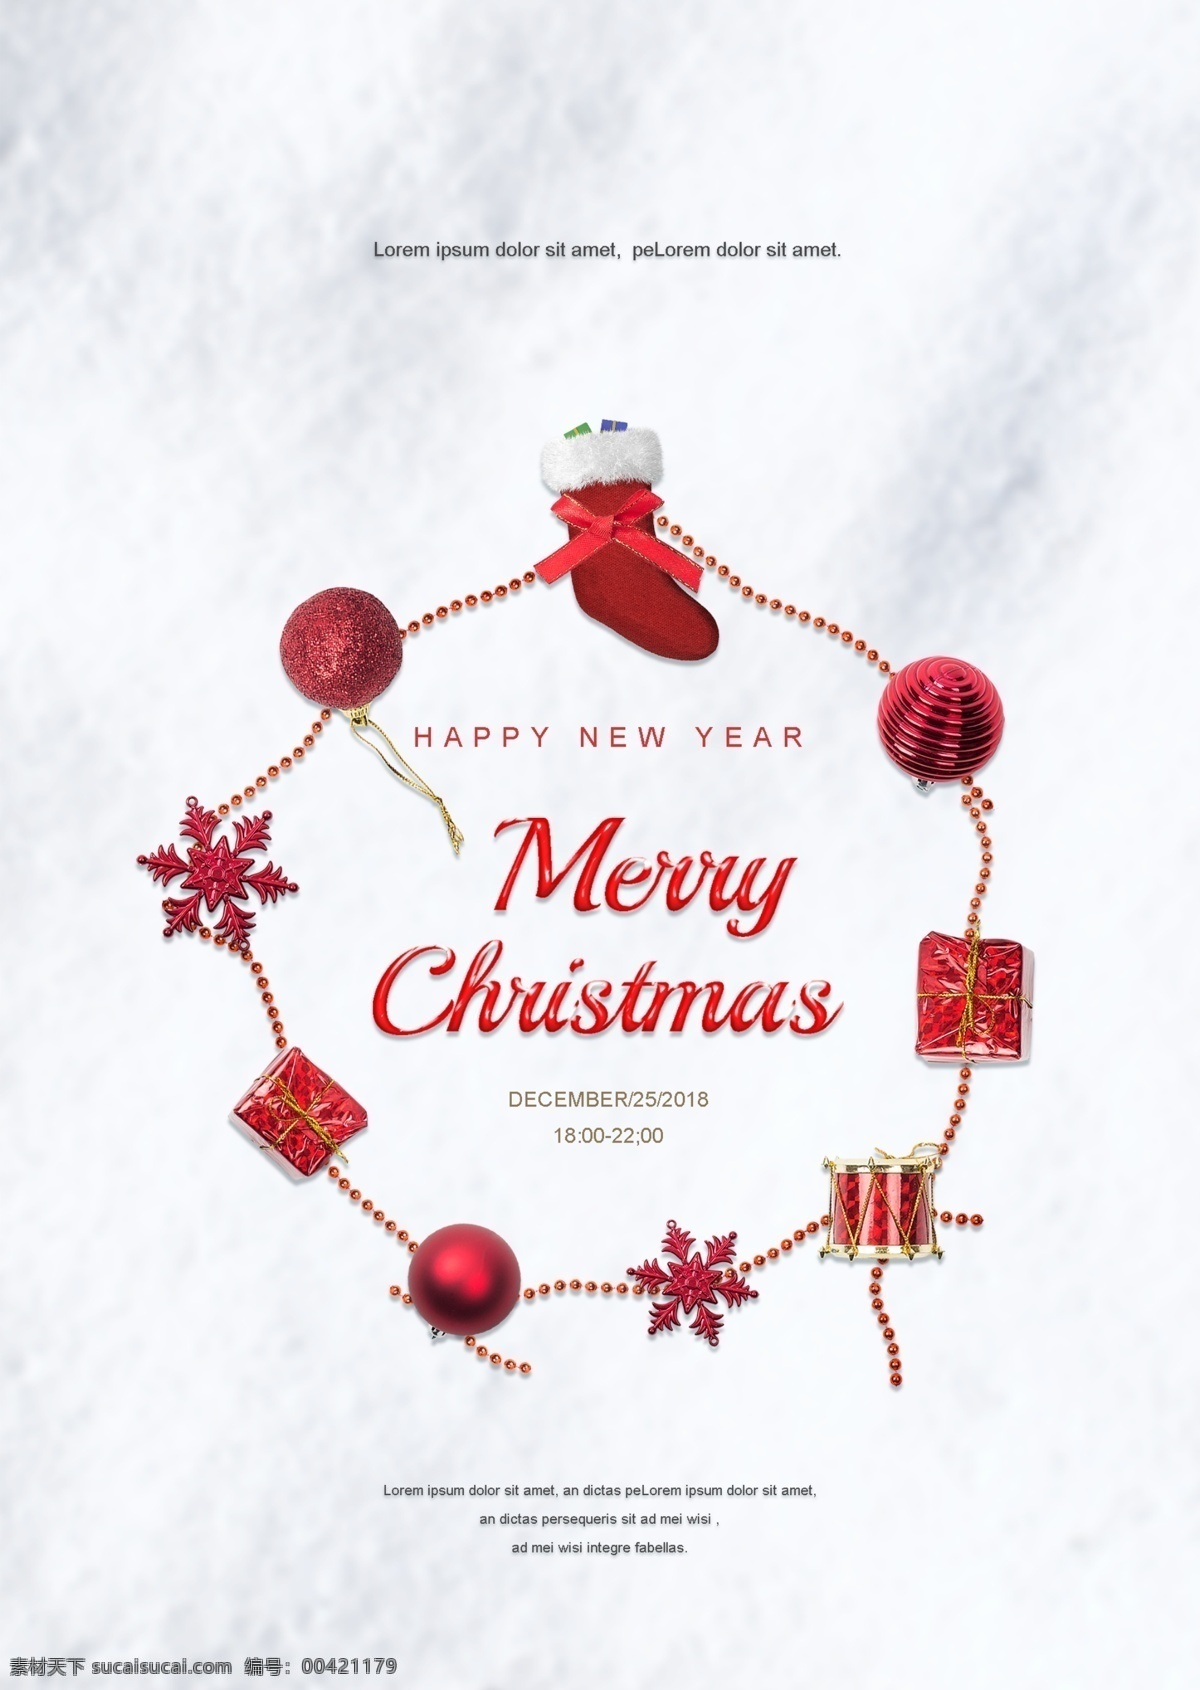 雪 红色 圣诞 礼品盒 明星 全球 环 边框 框架 圣诞快乐 海报 模板 圣诞节 装饰 元素 红色礼品盒 红色水晶球 红色圣诞球 红色雪花星星 圣诞袜 红鼓 新年 快乐 庆祝 背景 热点 共同